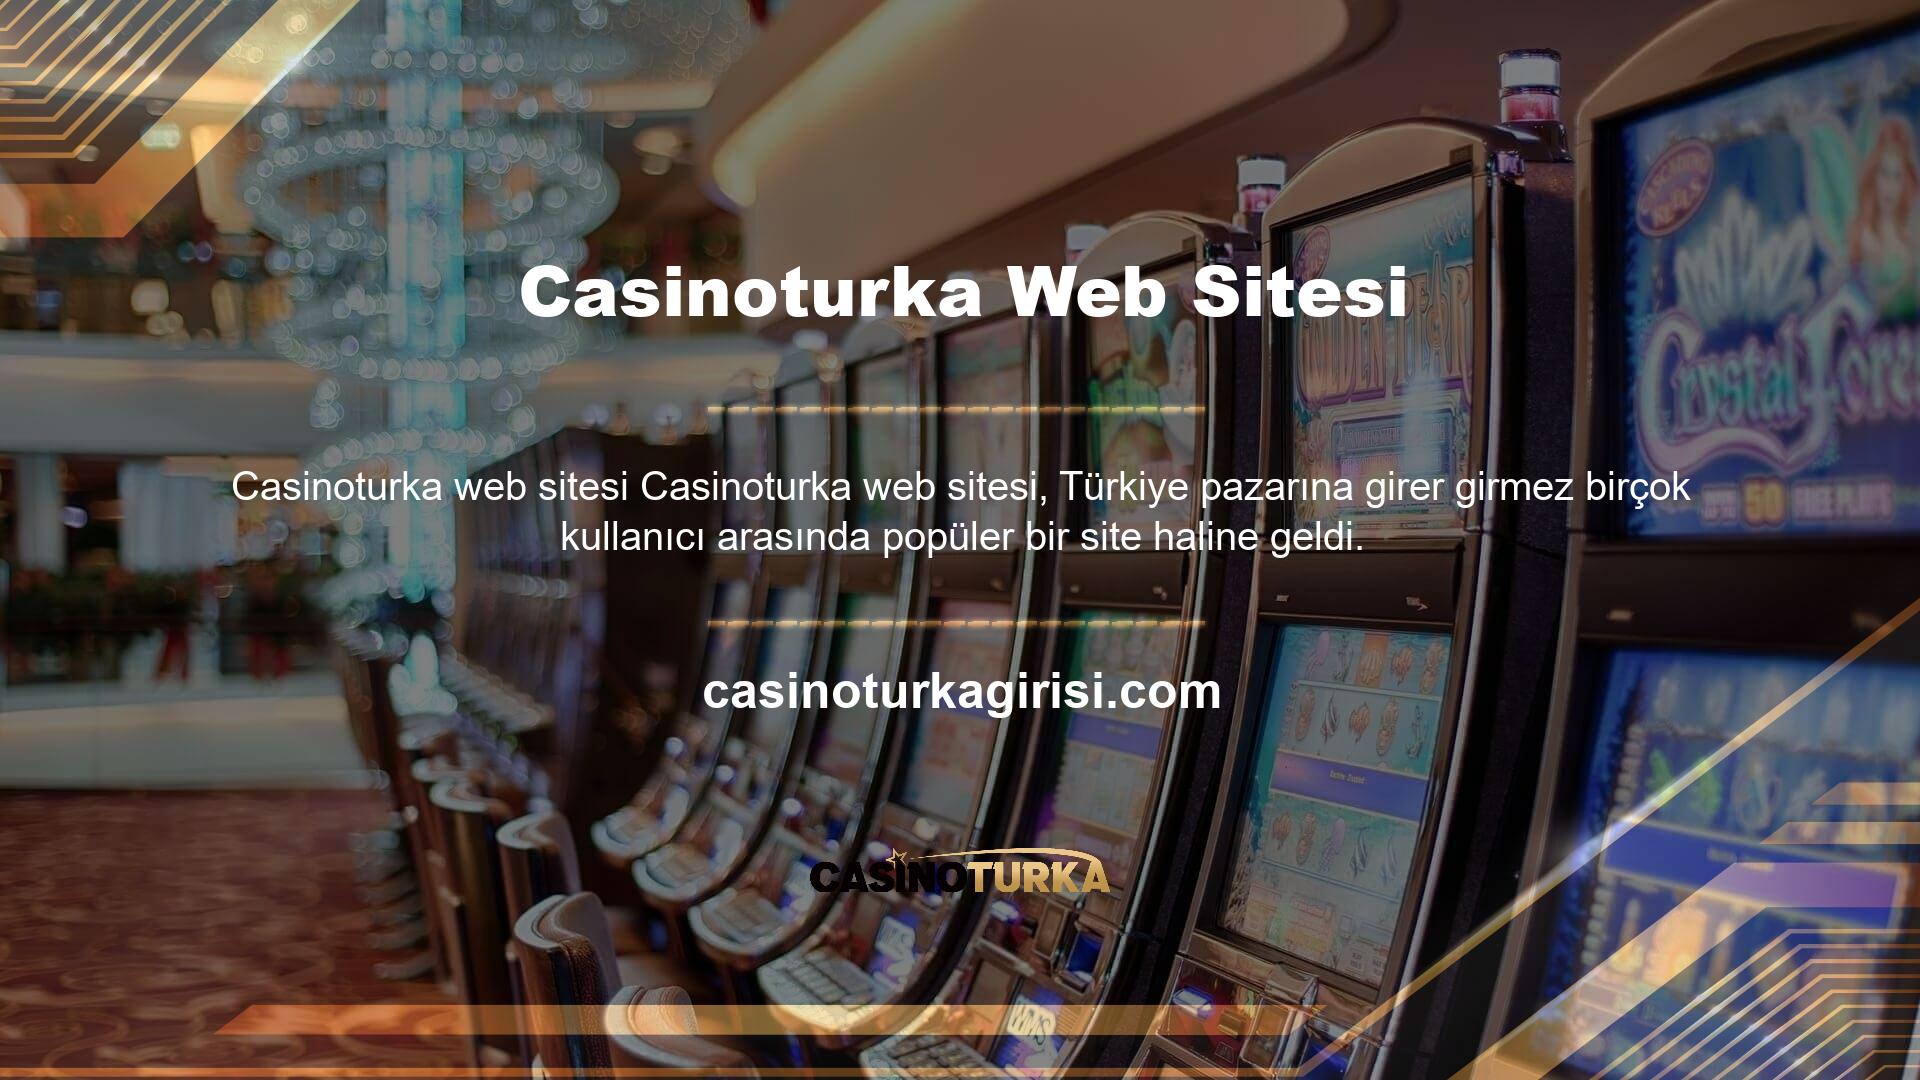 Türkiye pazarının en güvenilir bahis sitesi olarak kabul edilen site, aynı zamanda Casinoturka ilk kullanıcı puanına da sahip olup, online seçeneklerini her geçen gün genişletmeye başlıyor